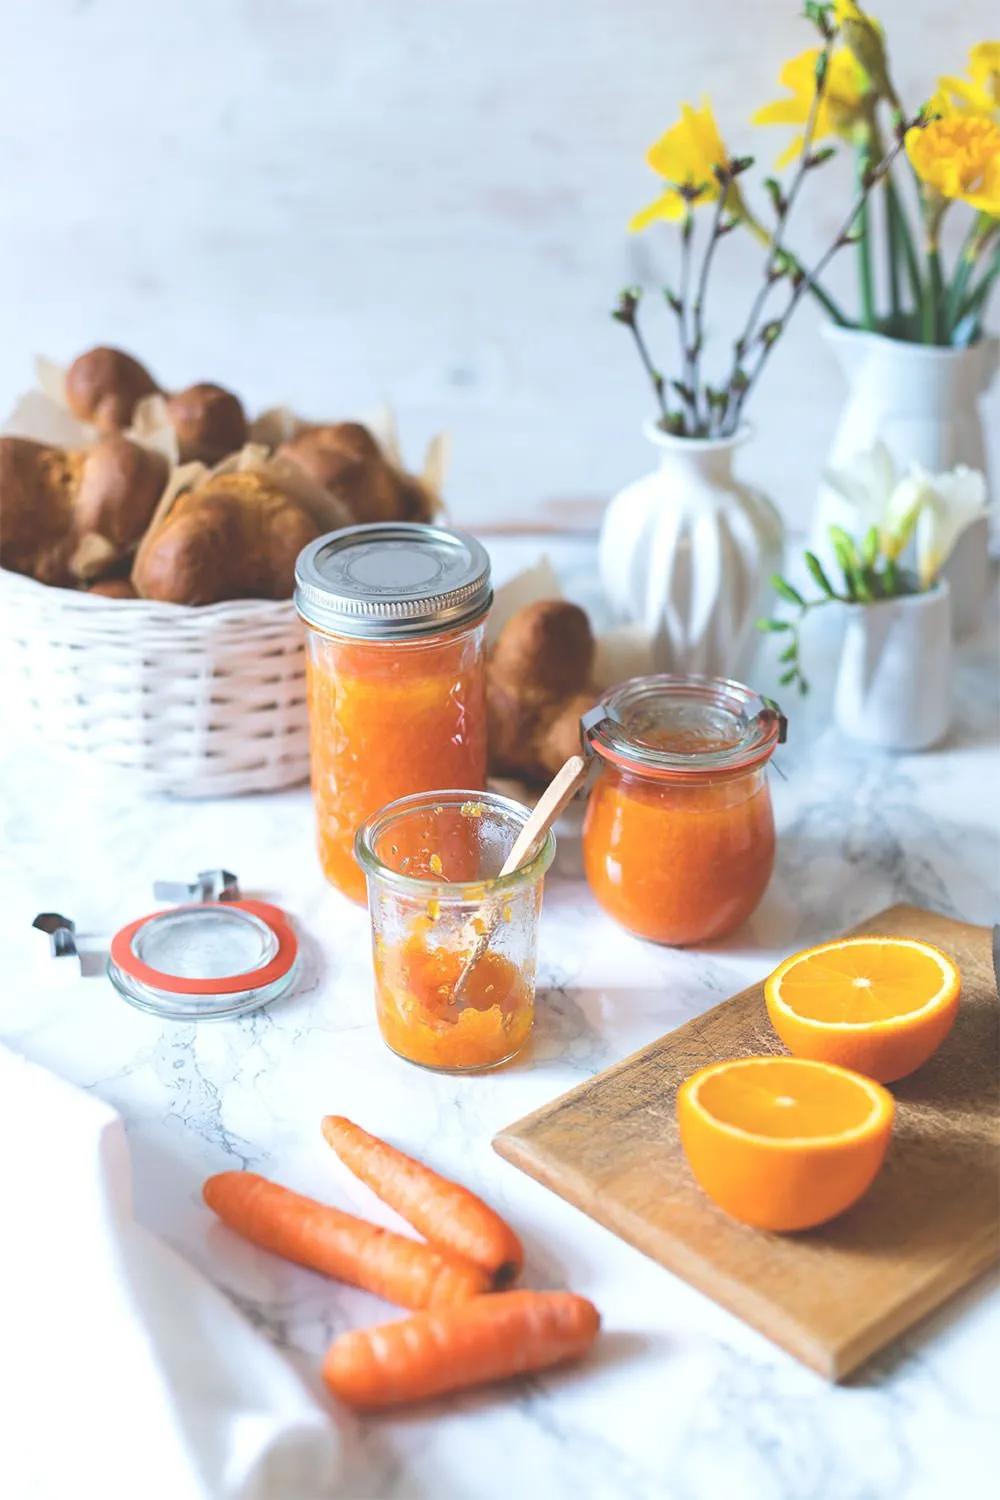 Möhren-Orangen-Konfitüre | Rezept | Brunch, Rezepte, Lecker